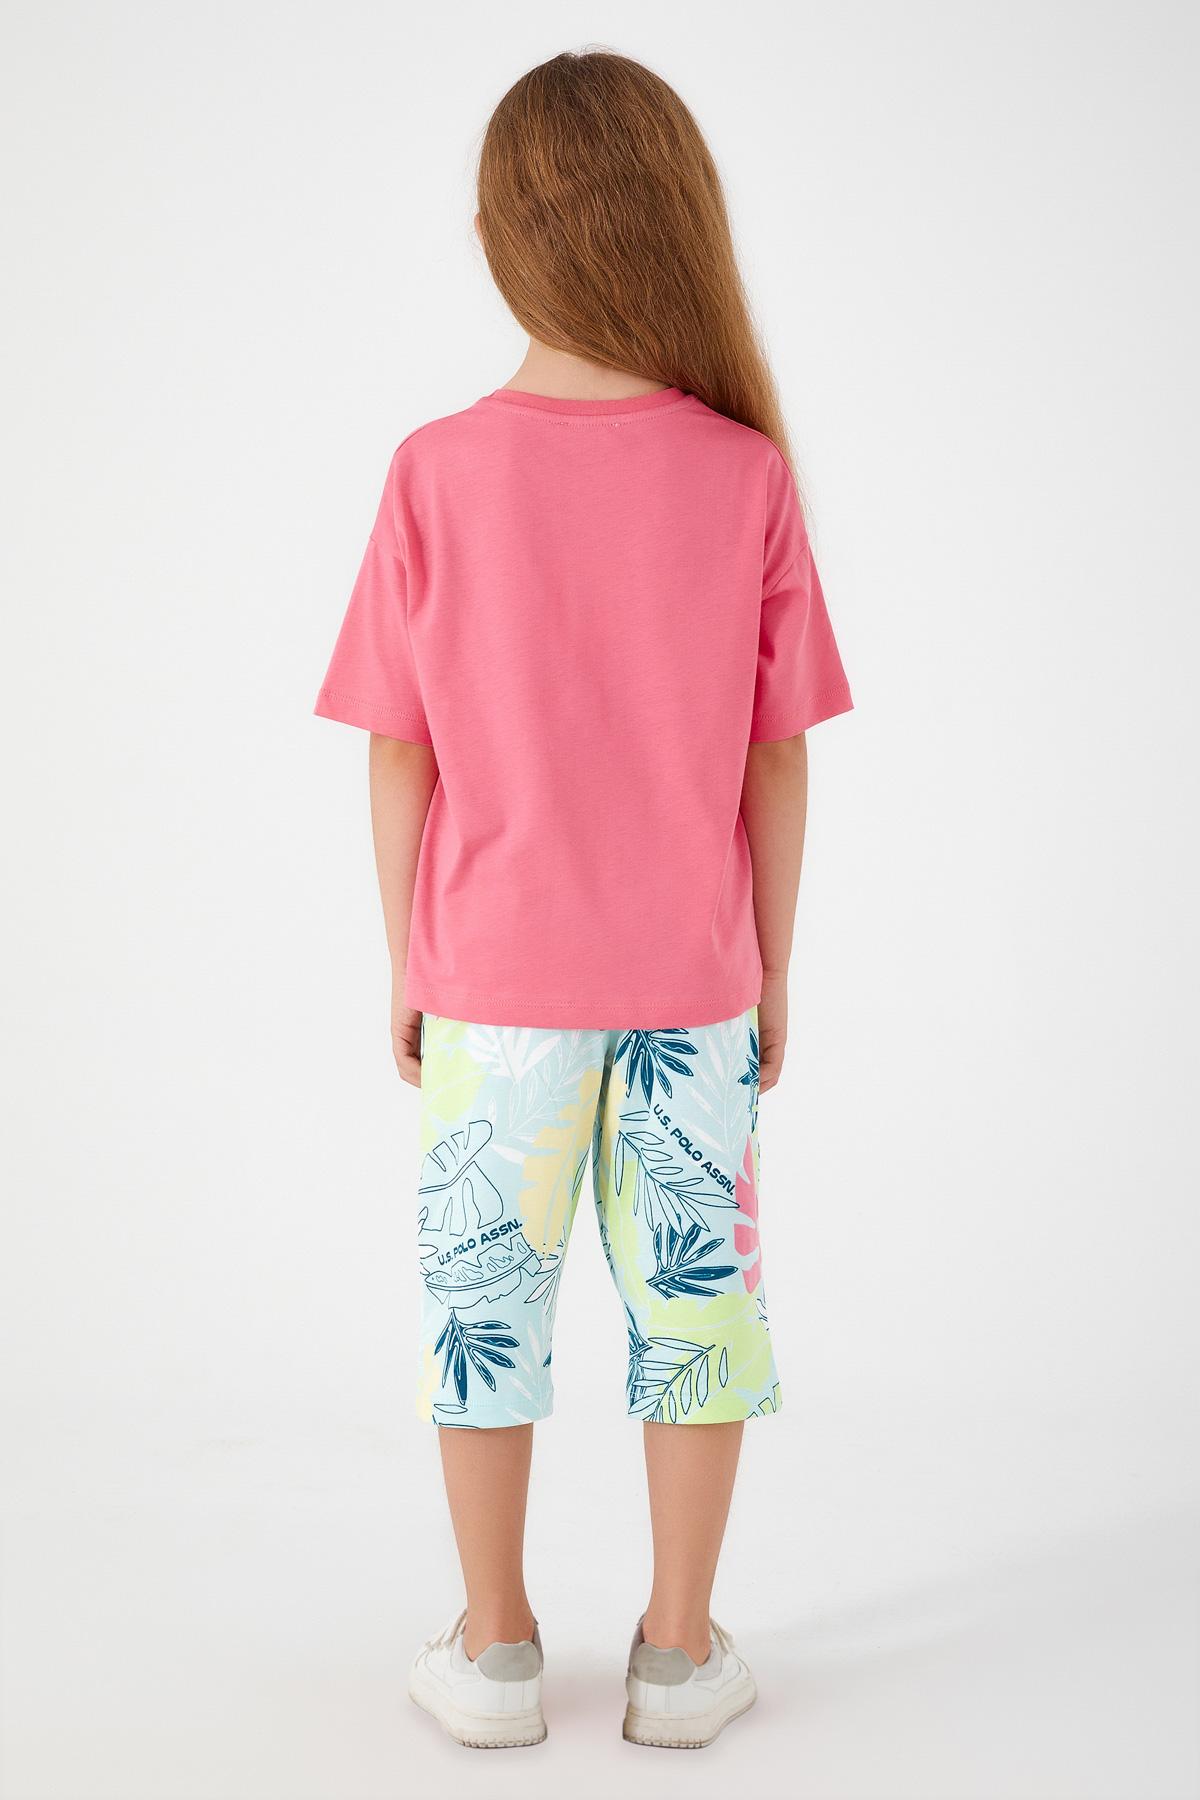 Selected image for U.S. POLO ASSN. Komplet šorc i majica za devojčice US1413-G roze